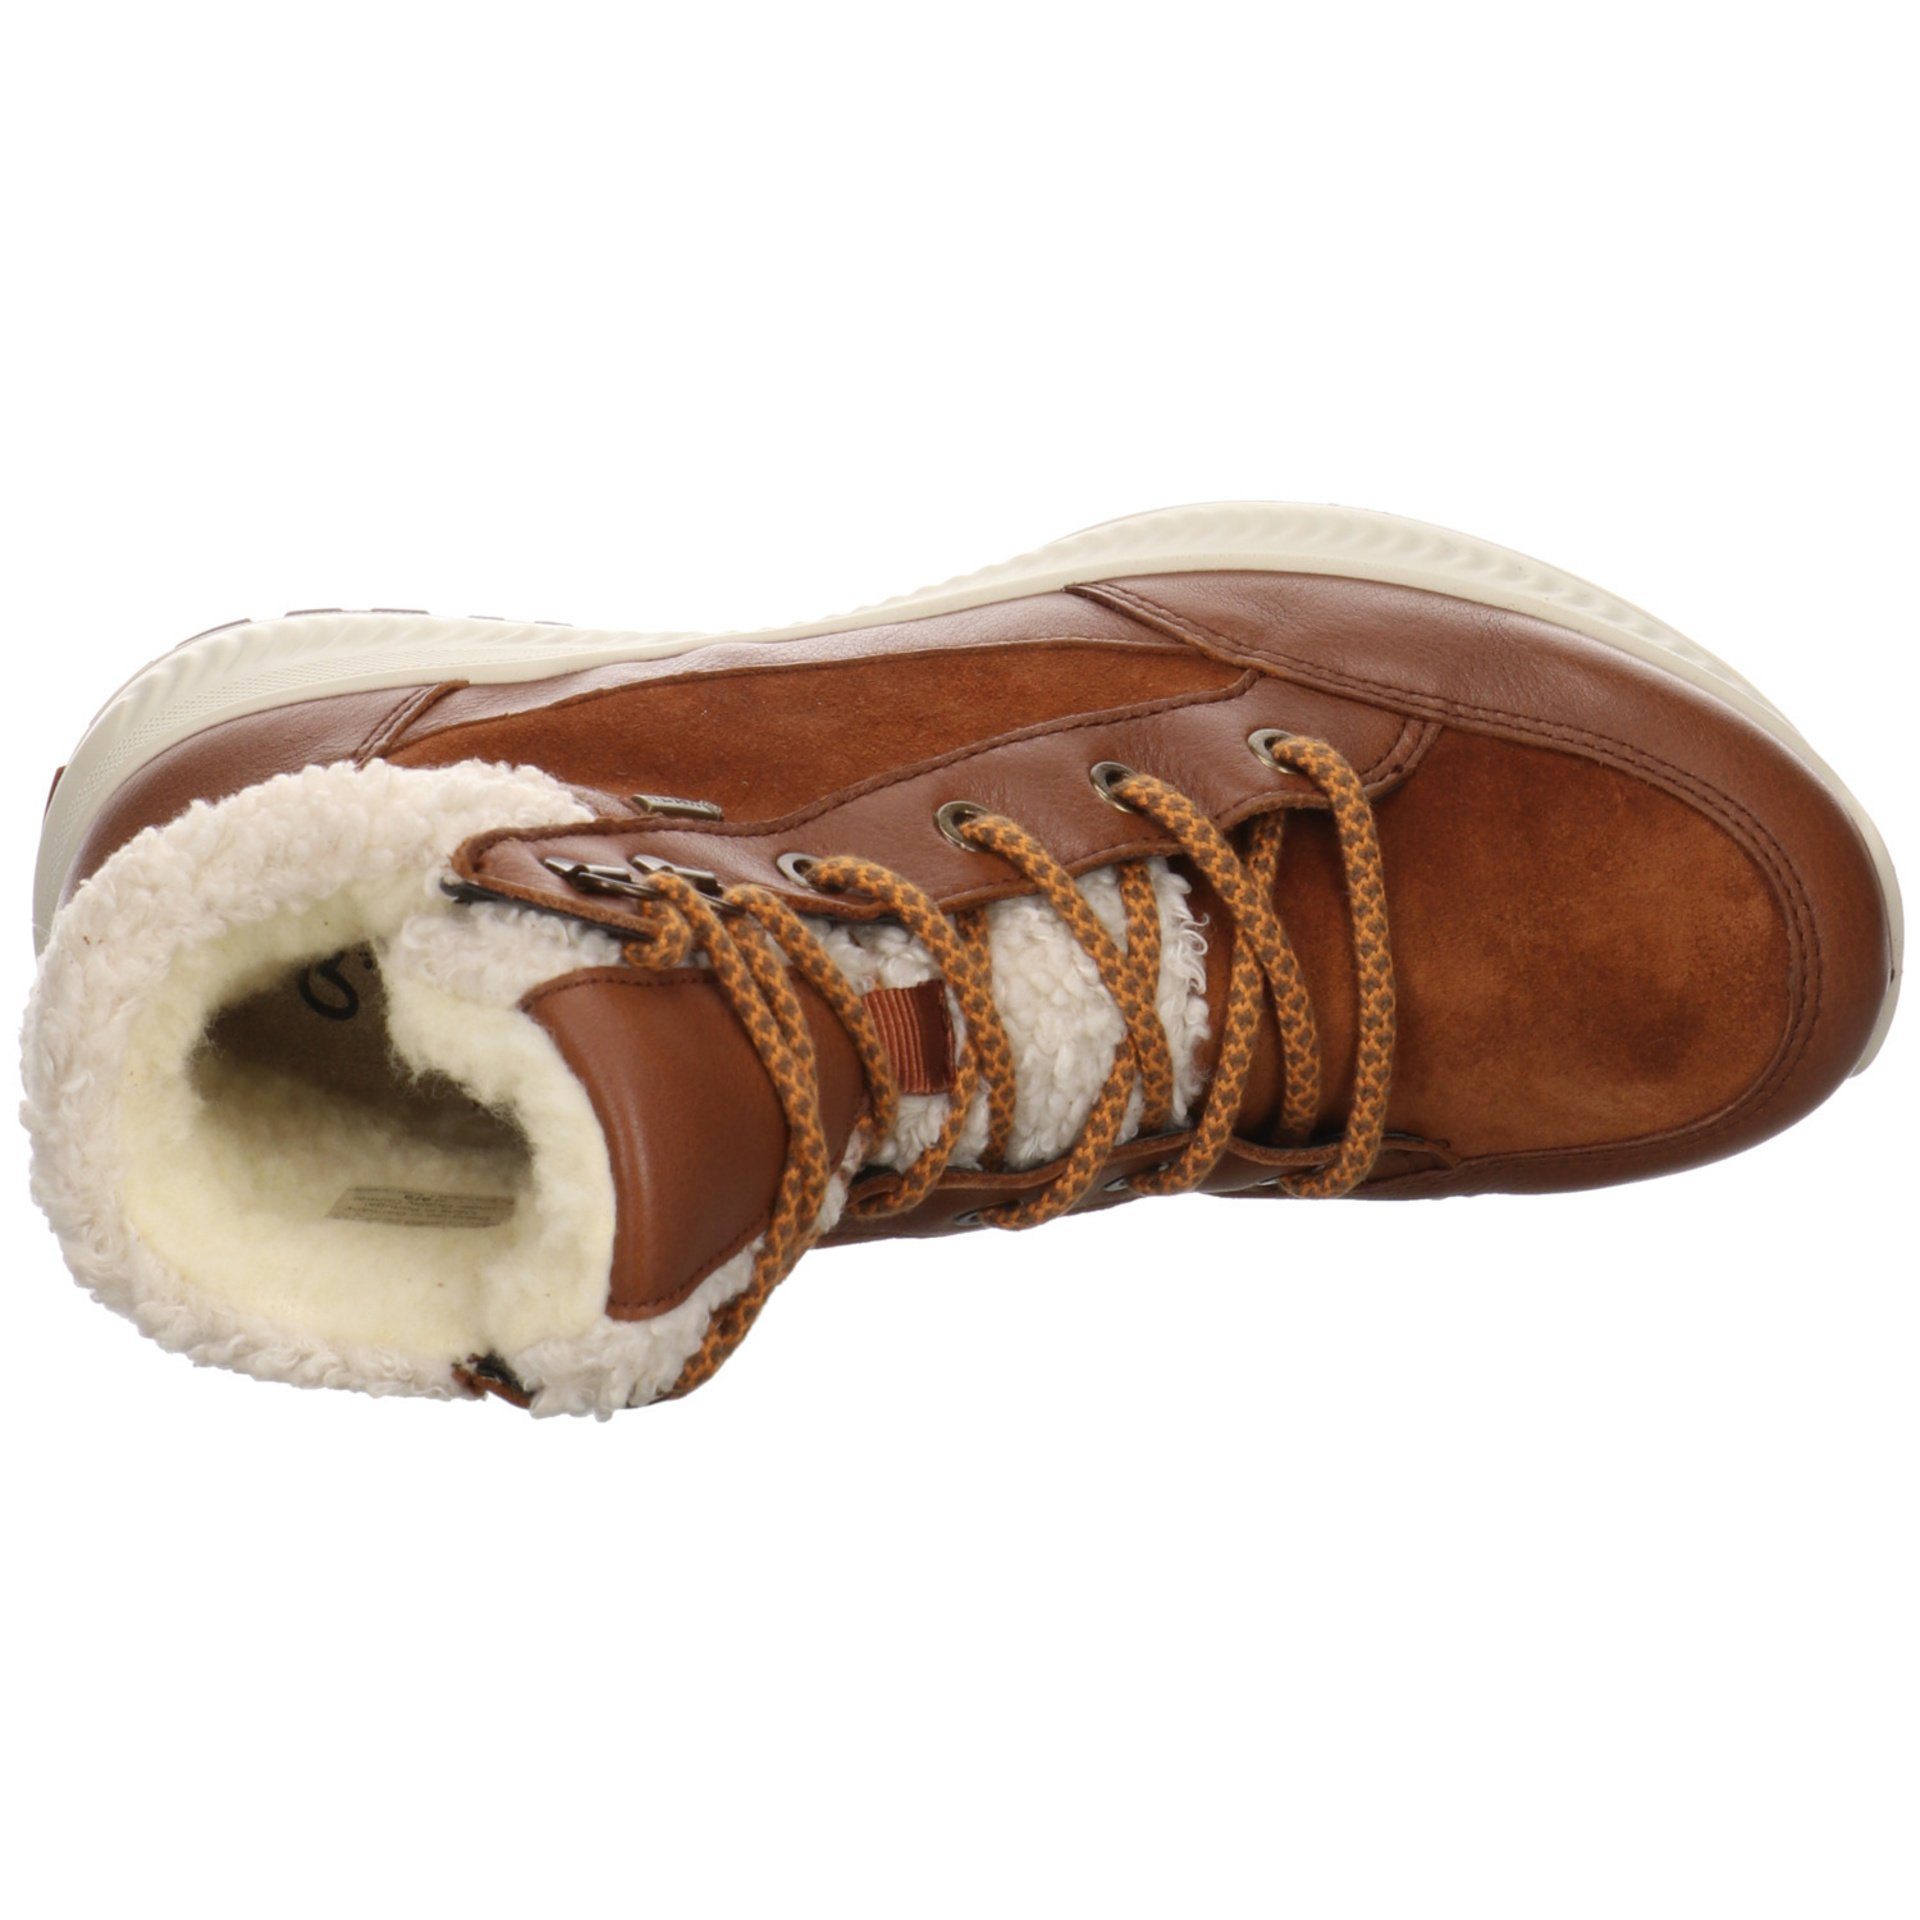 Damen Elegant Stiefel Ara Freizeit Hiker braun 046745 Schuhe Leder-/Textilkombination Stiefelette Boots